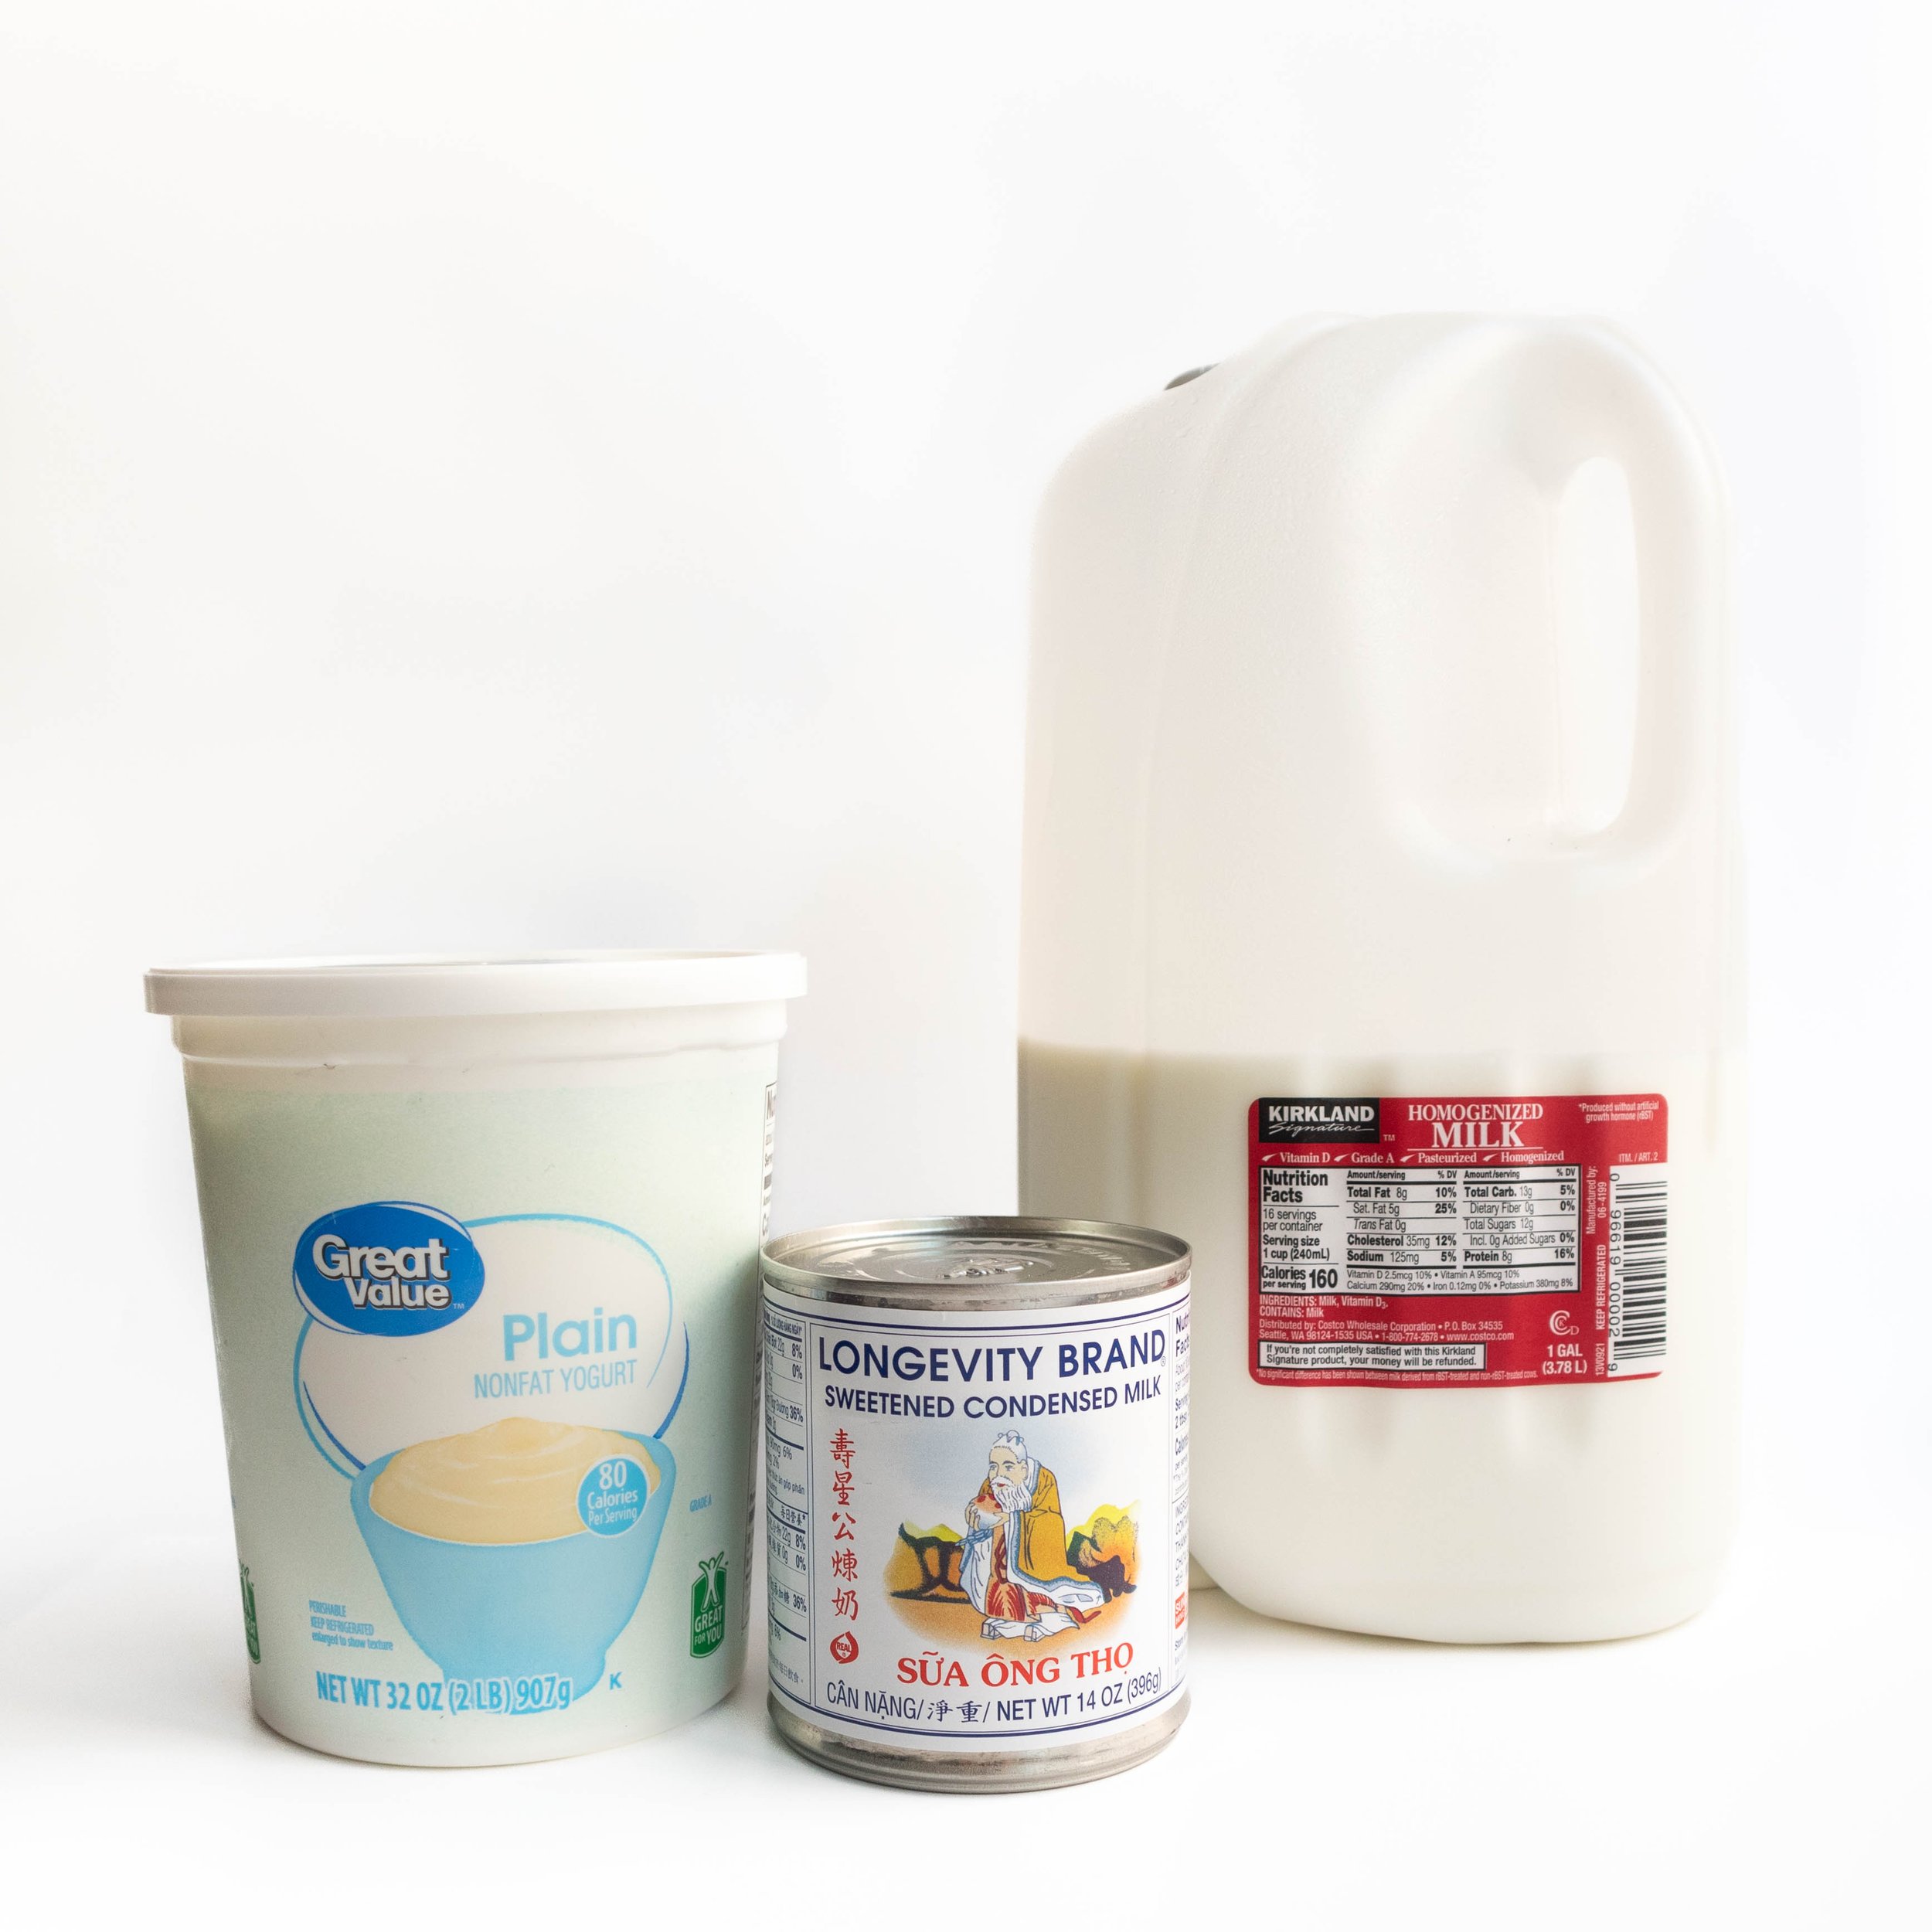 What you will need to make Vietnamese yogurt: plain yogurt, sweetened condensed milk and whole milk